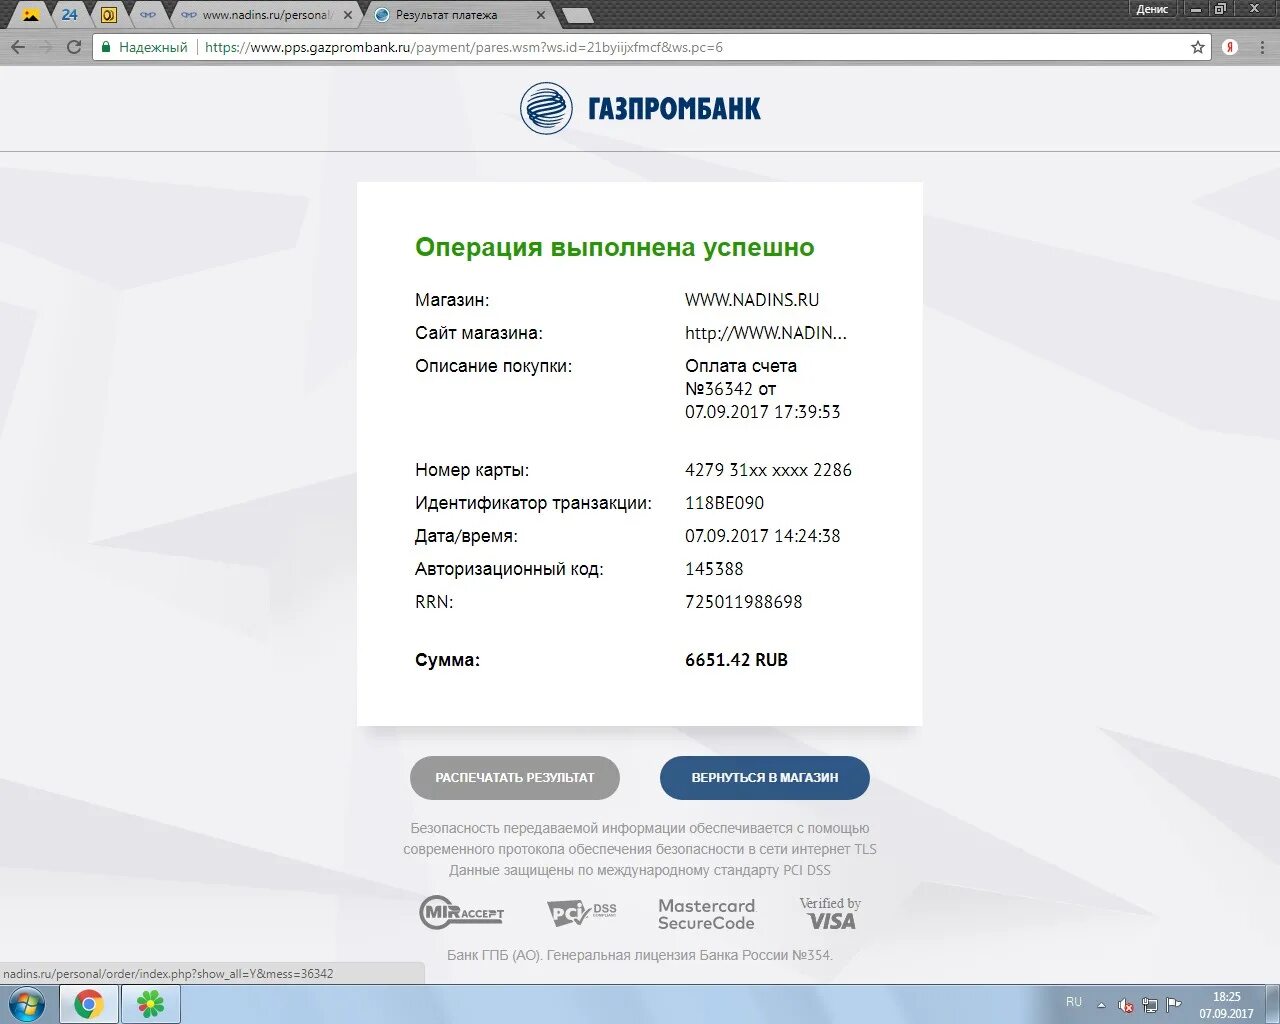 Электронный чек Газпромбанк. Выписка Газпромбанк. Коды операций Газпромбанка. Код операции в Газпромбанке.